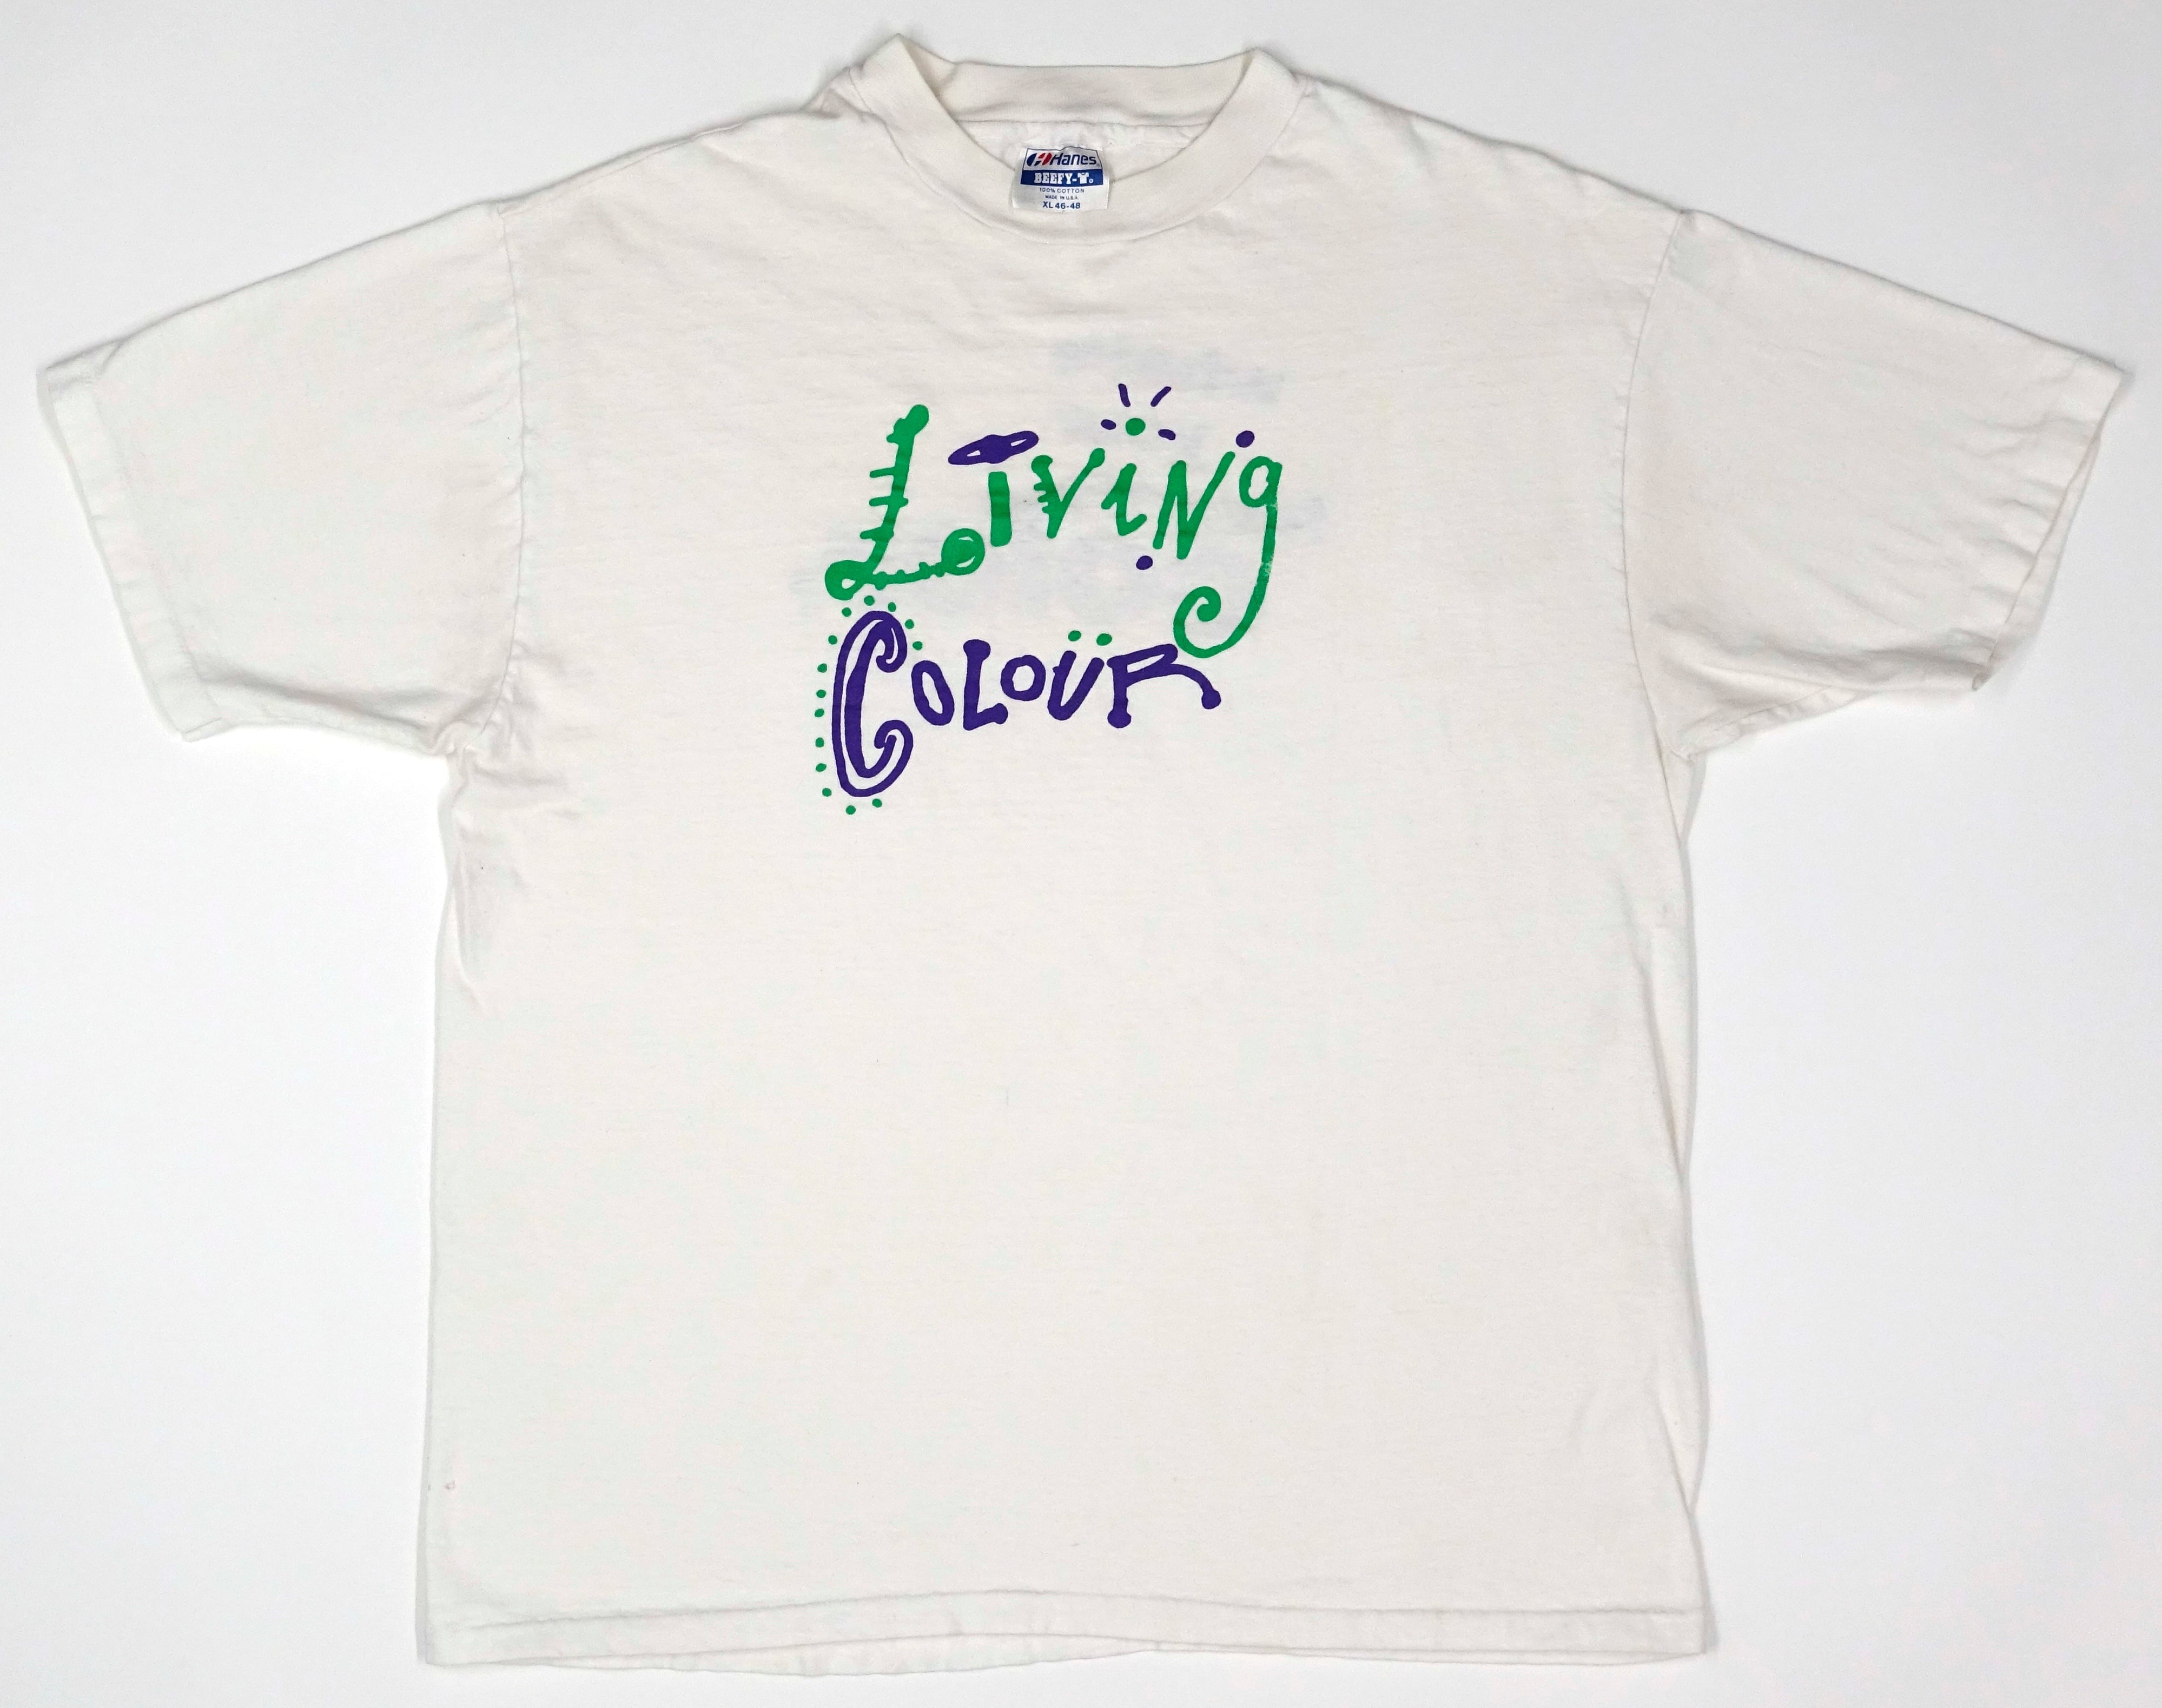 Living Colour – What's Your Favorite Color? 1988 Tour Shirt Size XL